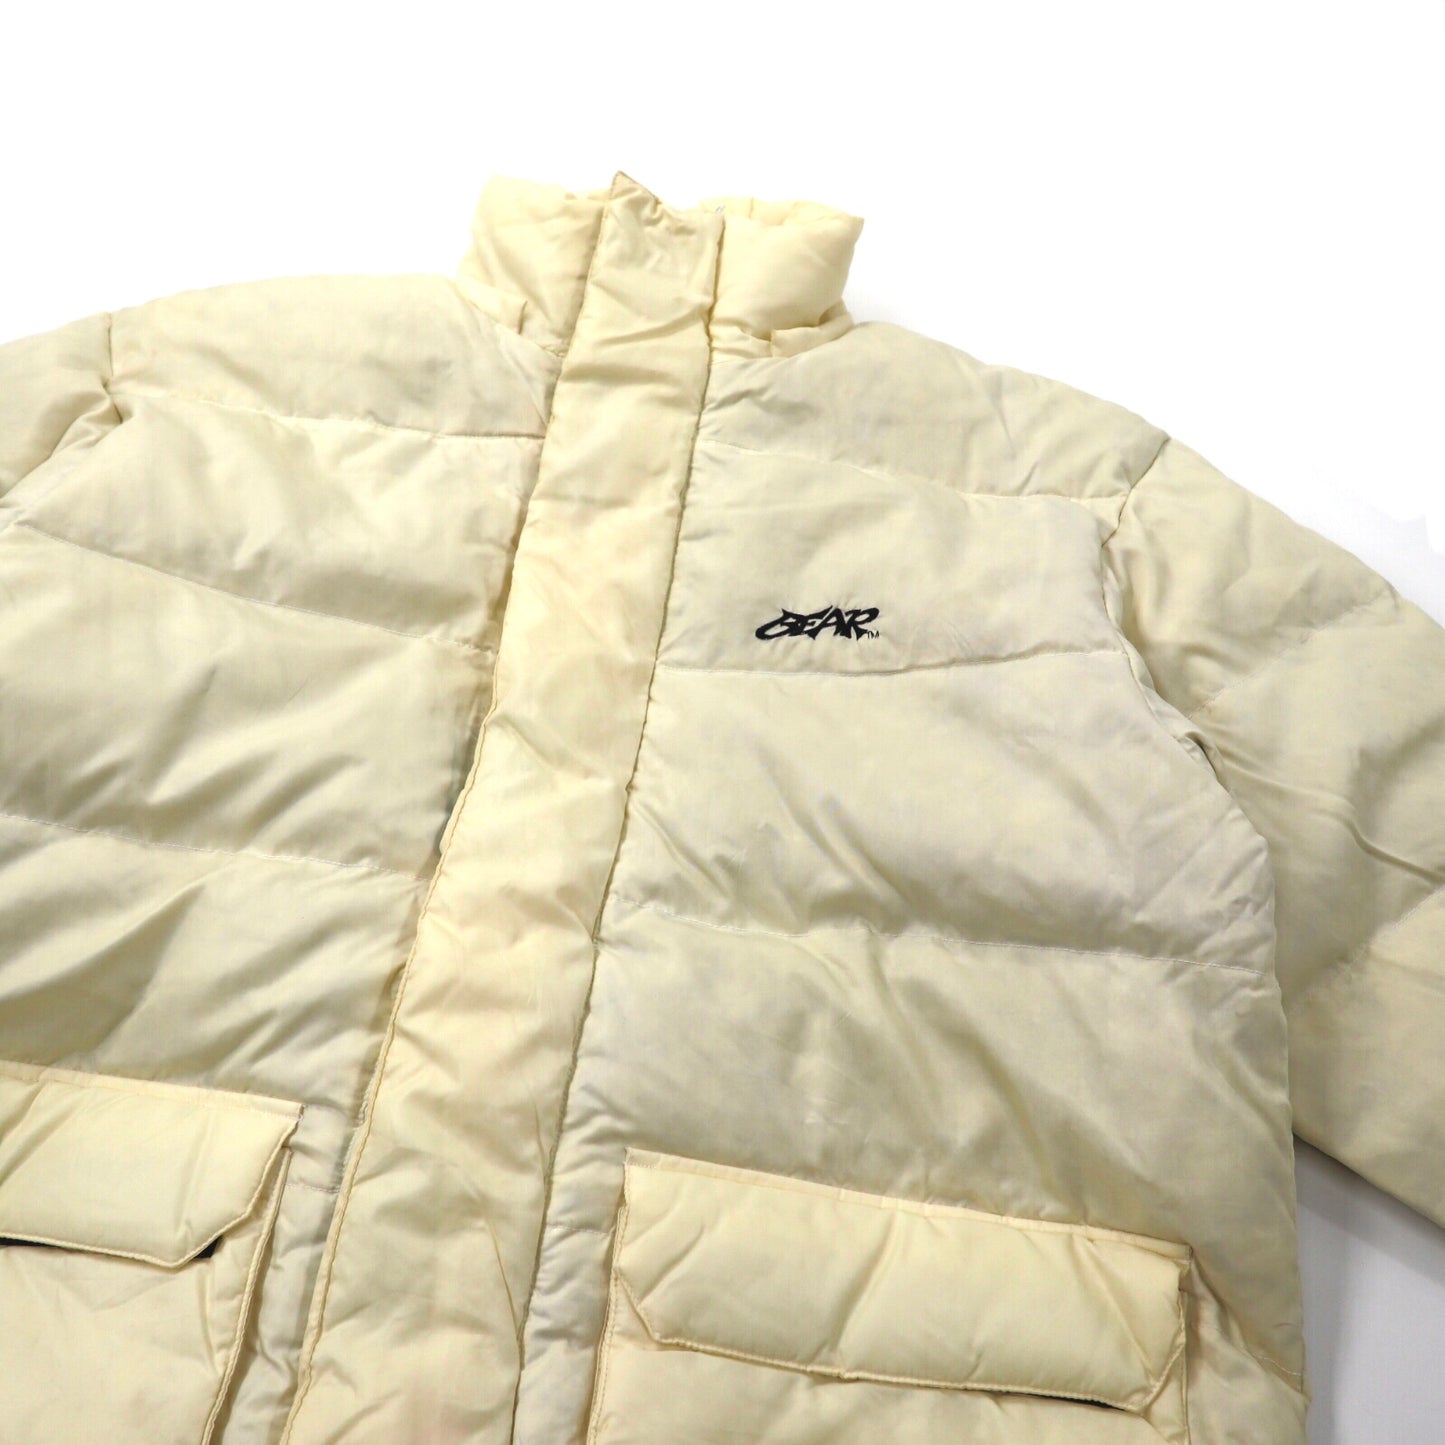 BEAR USA ダウンジャケット M ホワイト ナイロン ビッグサイズ スモールロゴ刺繍